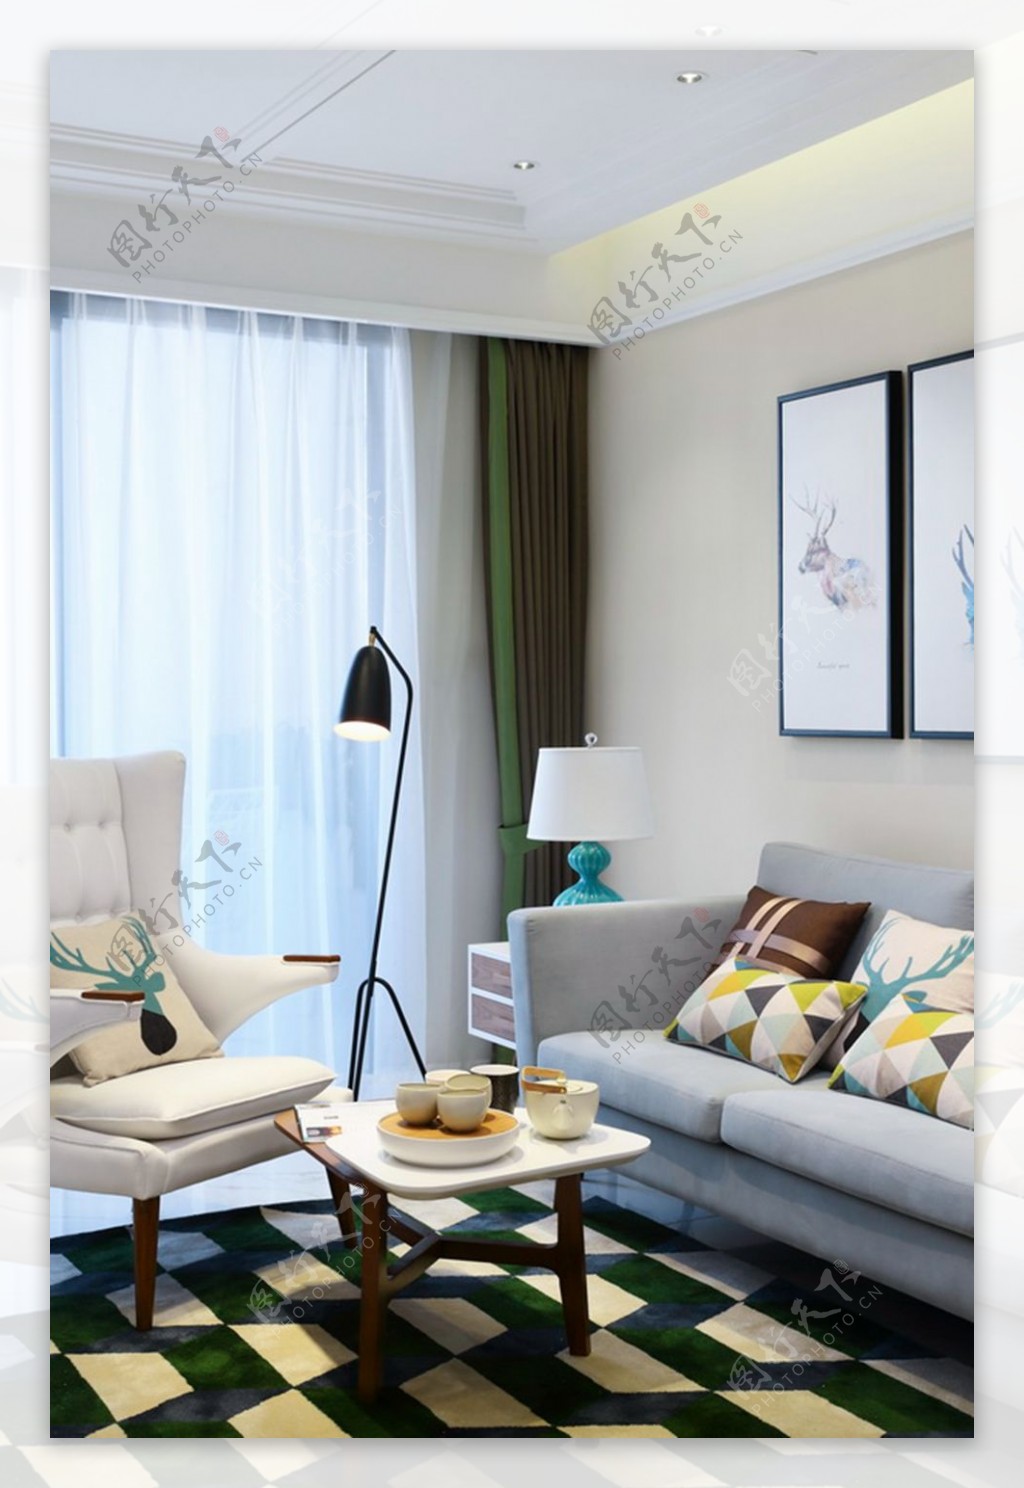 现代时尚客厅绿色格子地毯室内装修效果图